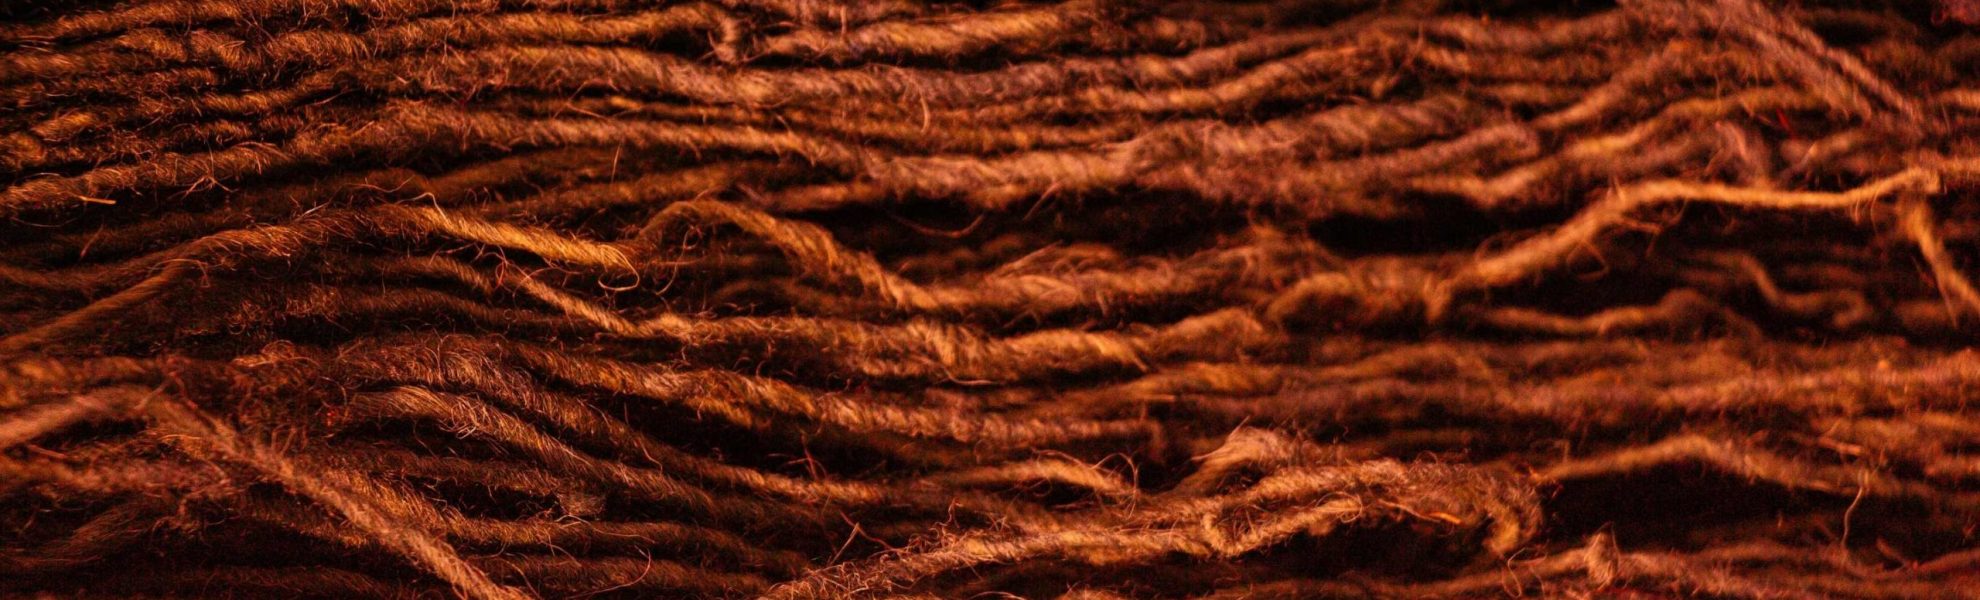 lana vopsita natural cu plante salbatice